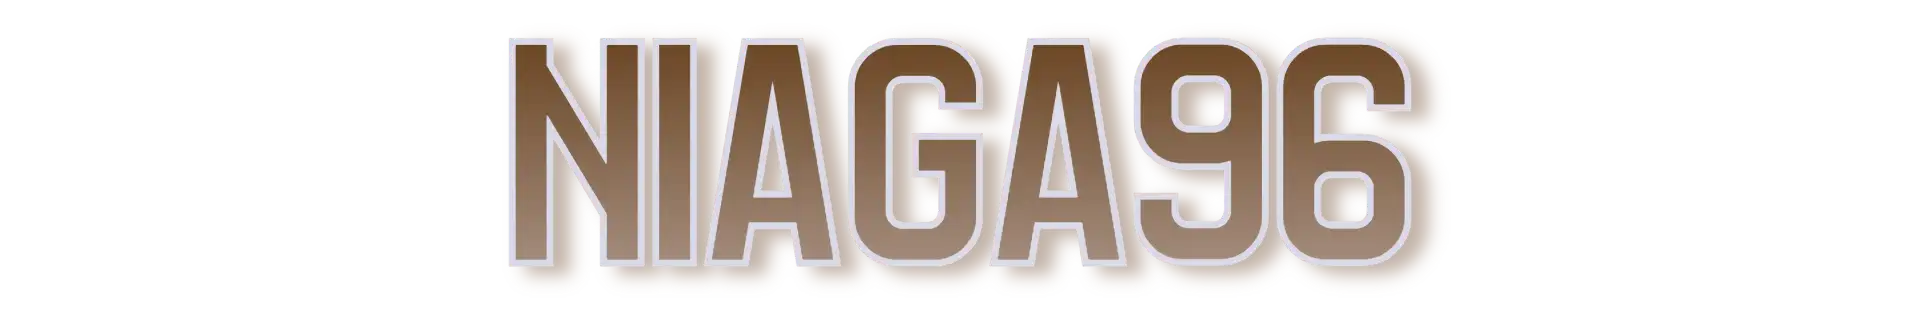 Niaga96